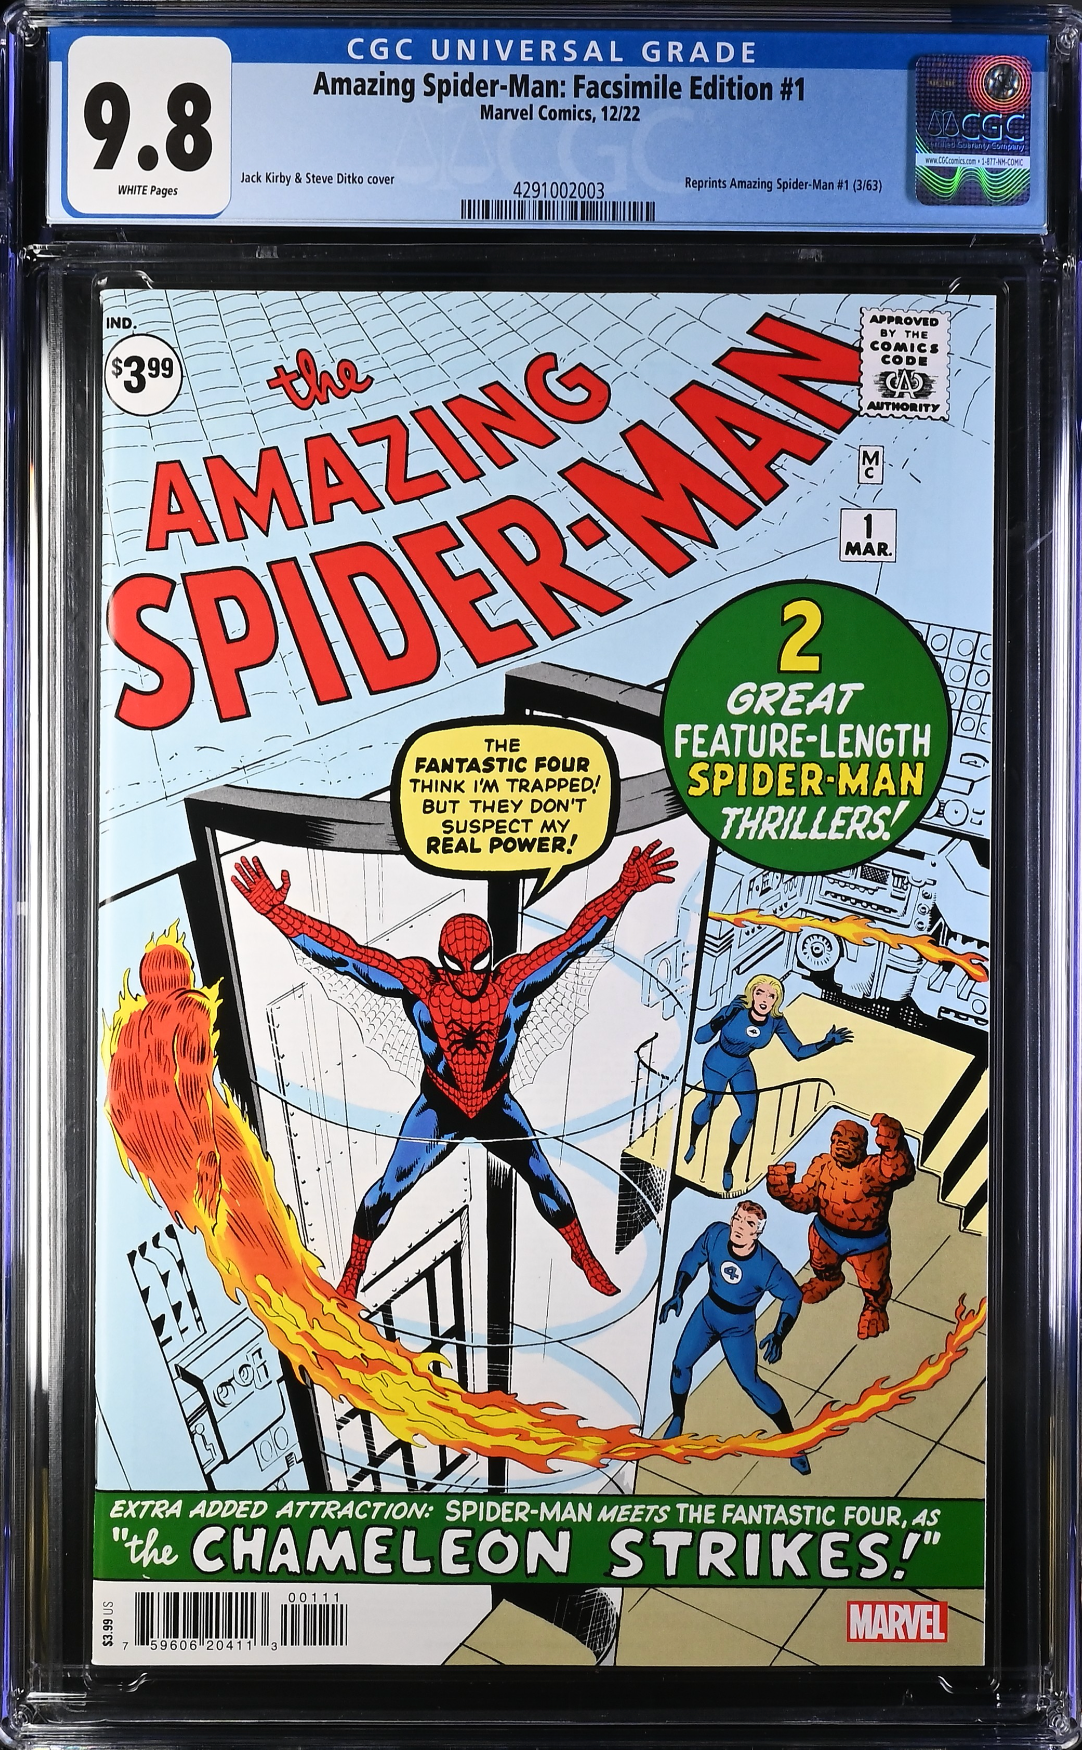 Amazing Spider-Man #1 Facsimile Edition CGC 9.8